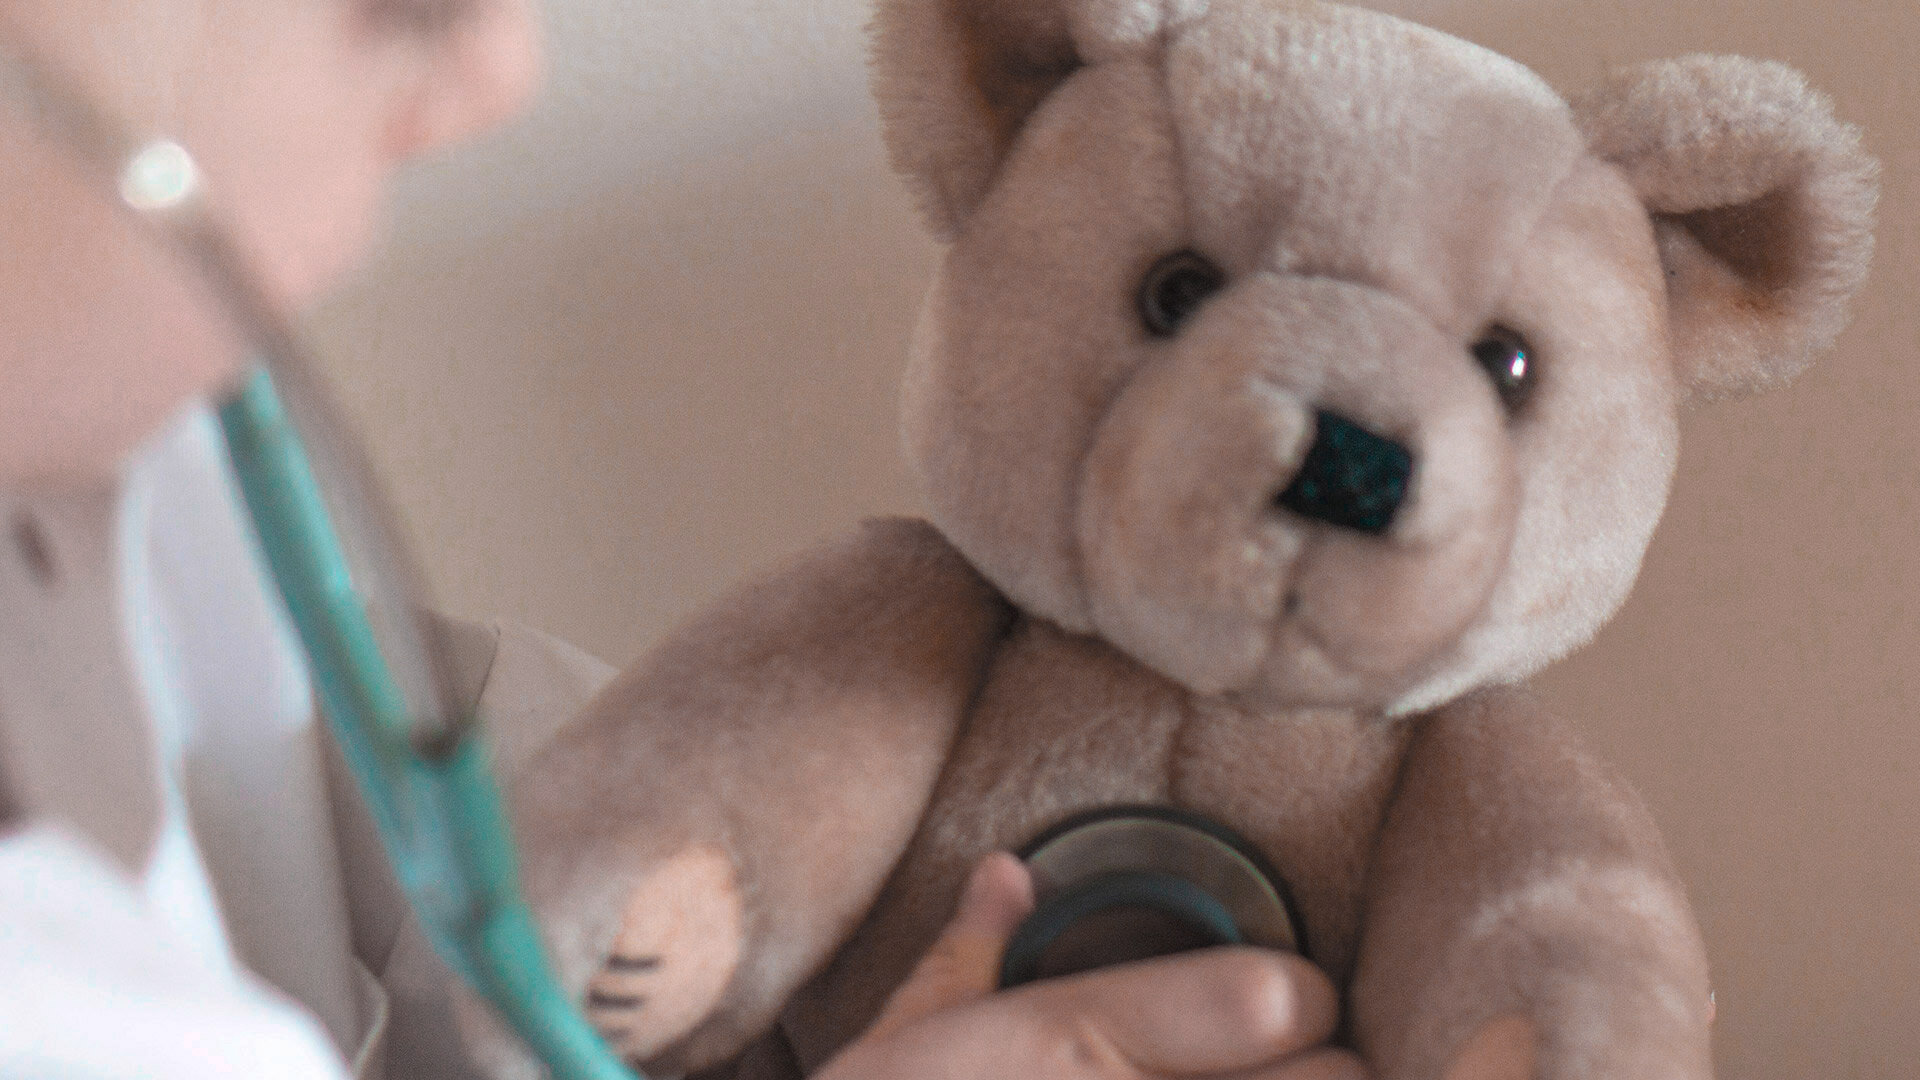 Teddy mit von Kinderhand gehaltenem Stethoskop auf der Brust, rechts daneben leicht verschwommenes Kindergesicht.